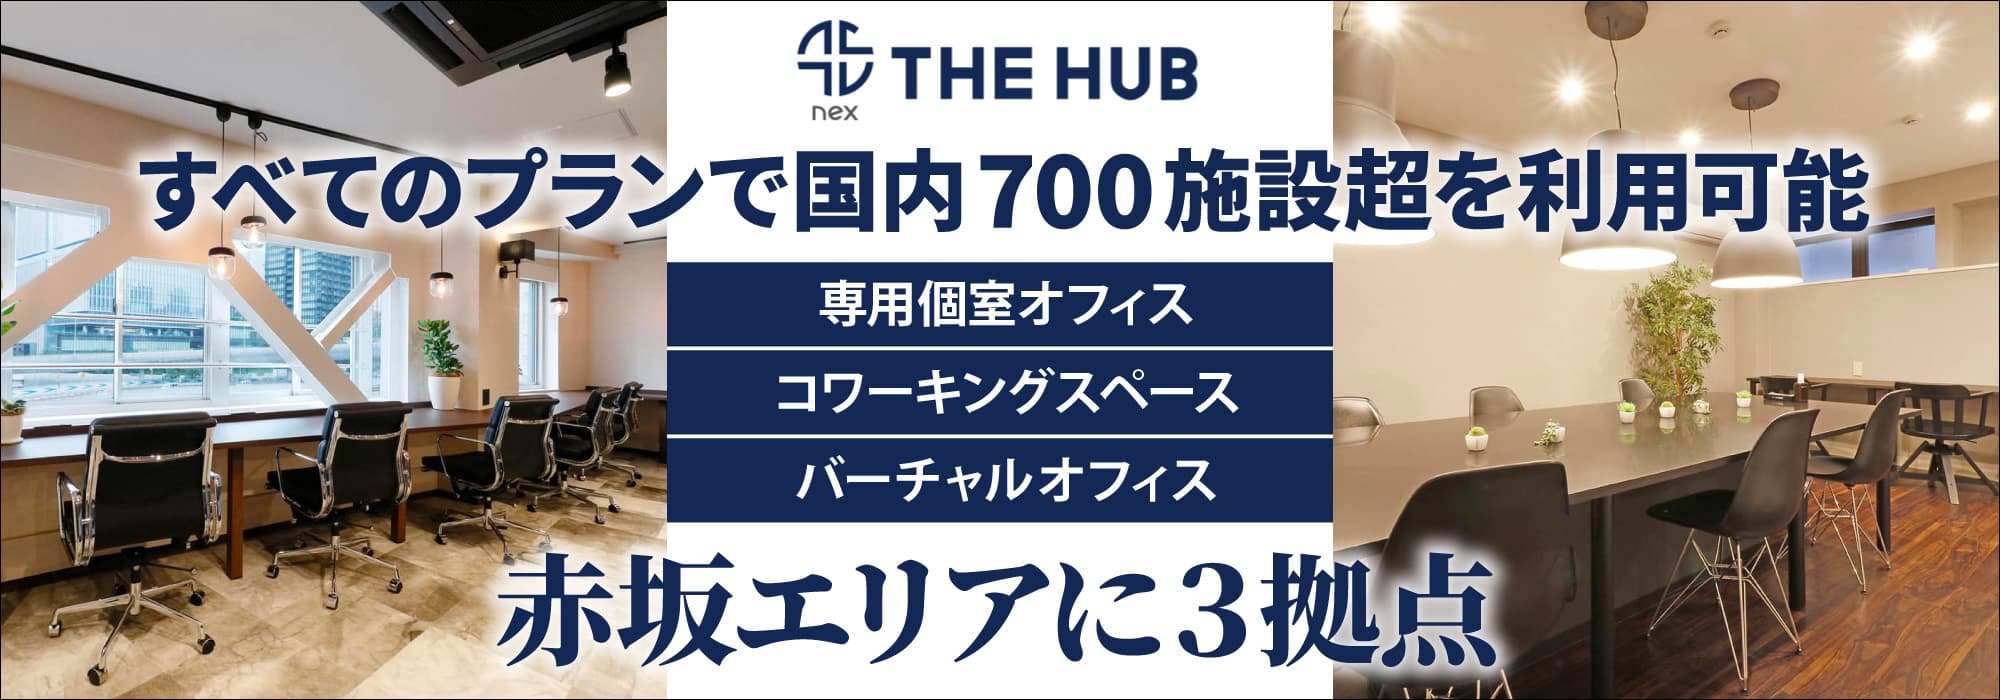 赤坂エリアに４拠点、創造力と生産性を刺激するレンタルオフィス【THE HUB】すべてのプランで国内773施設を利用可能